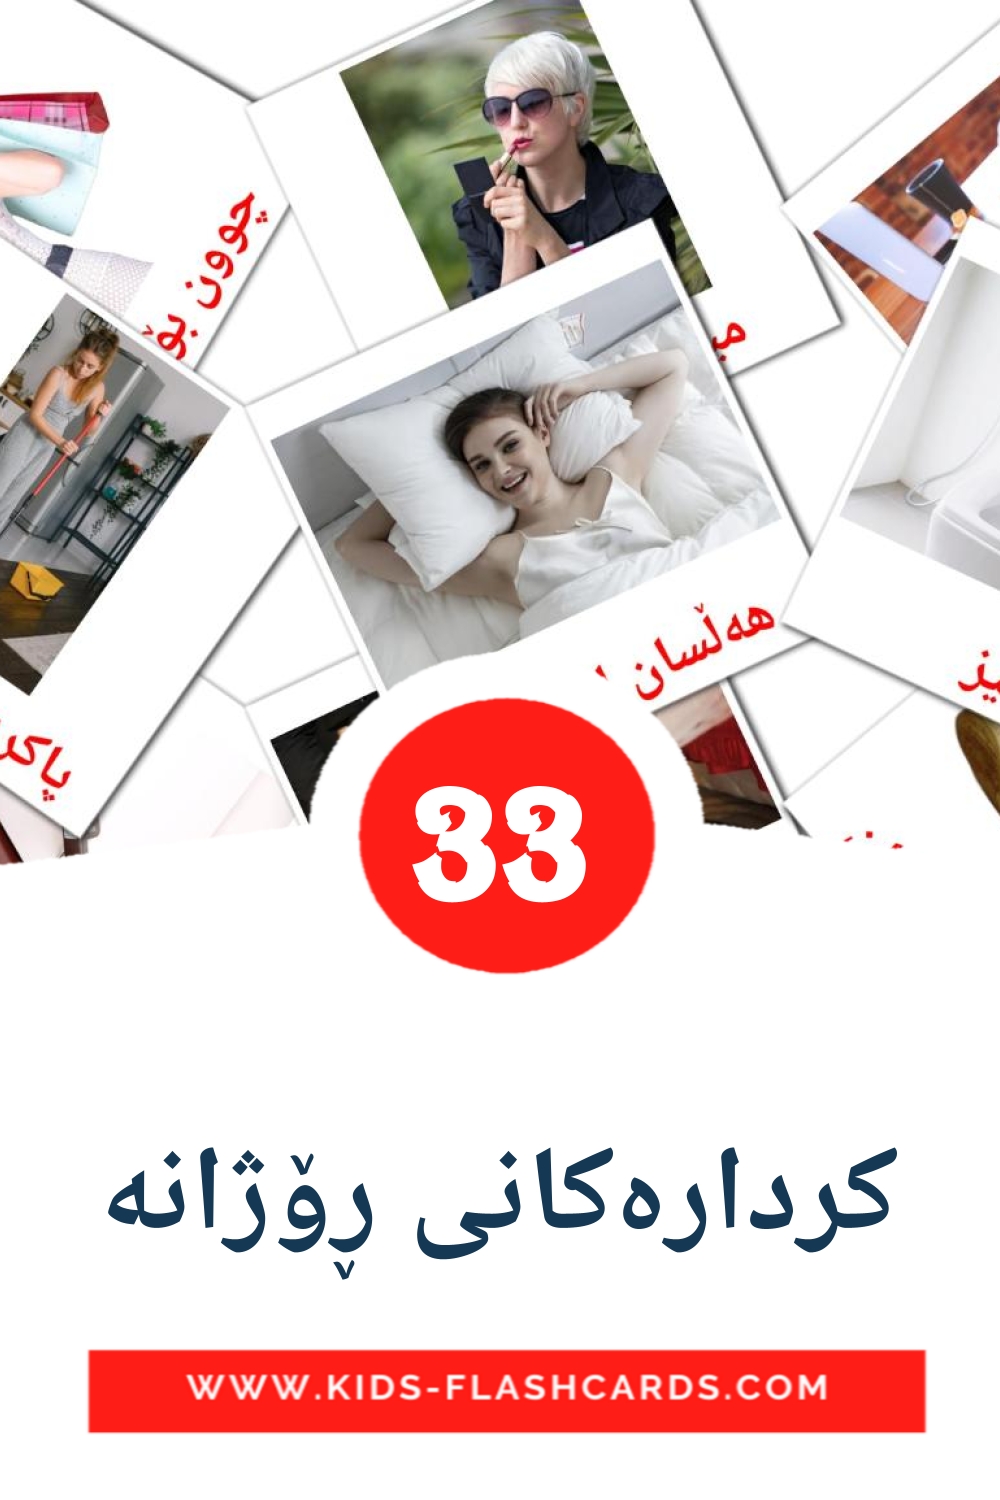 33 tarjetas didacticas de کردارەکانی ڕۆژانە para el jardín de infancia en kurdo(sorani)